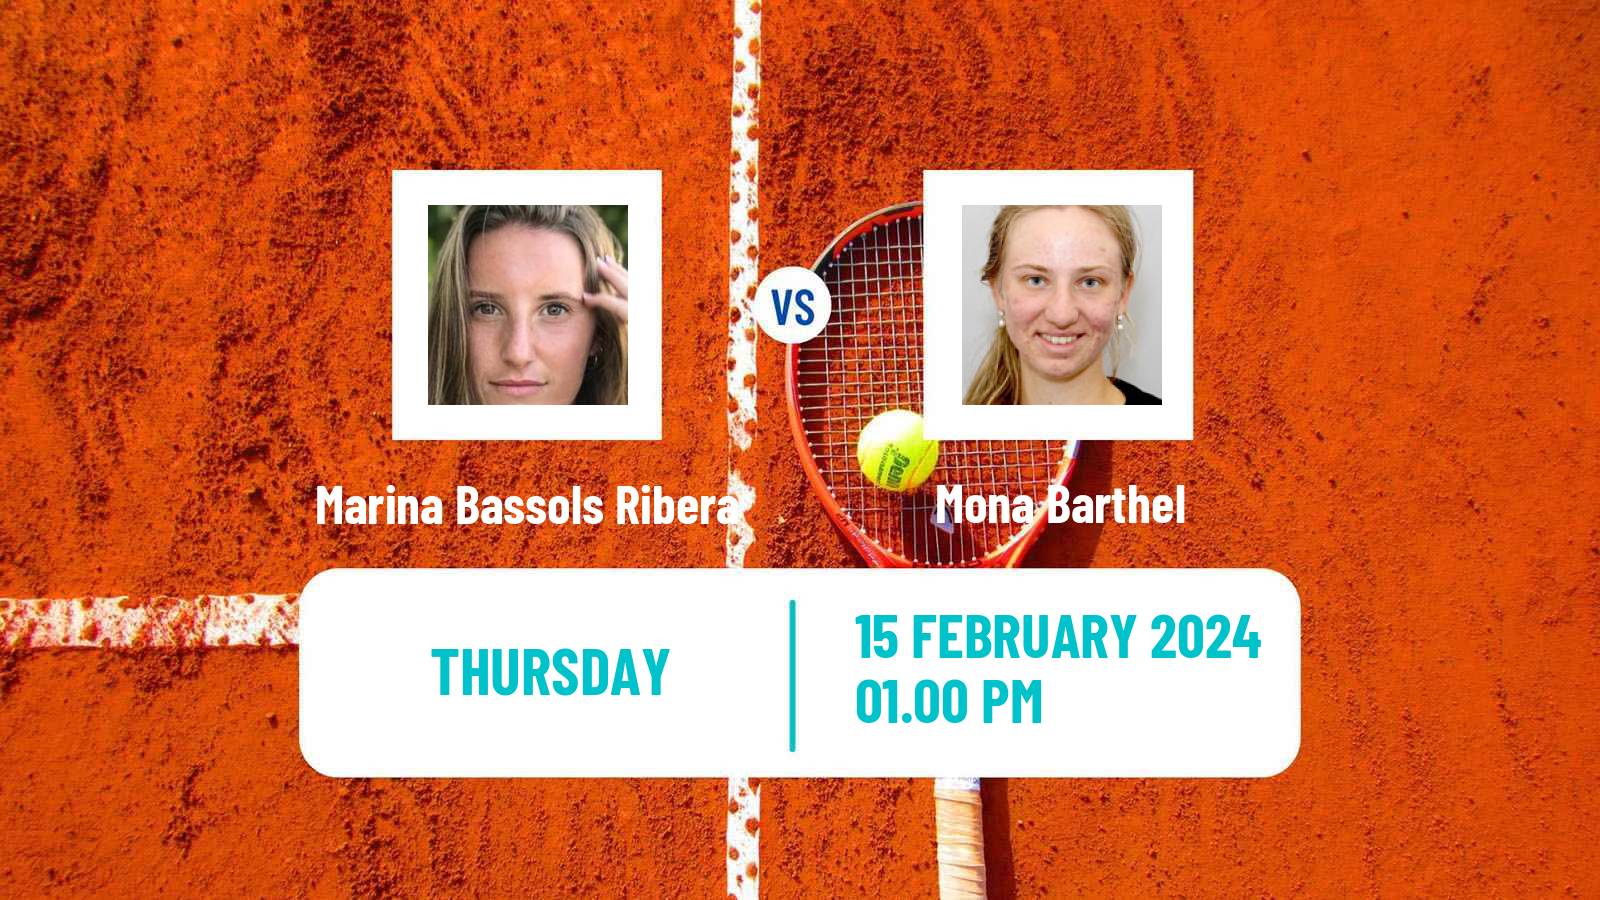 Tennis ITF W75 Altenkirchen Women Marina Bassols Ribera - Mona Barthel